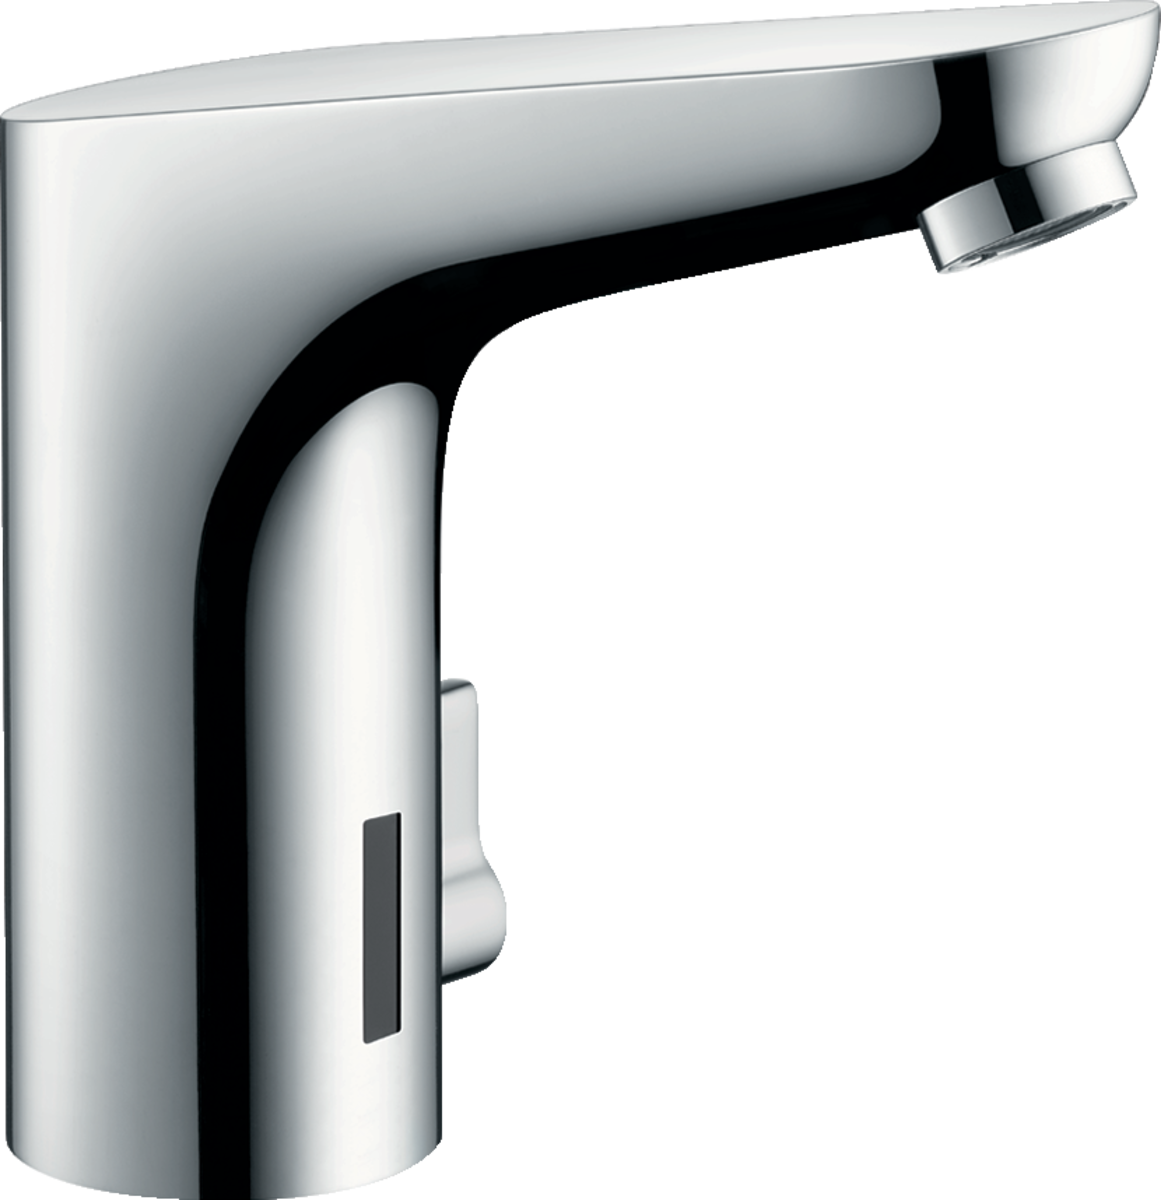 hansgrohe Håndvaskarmaturer: håndvaskarmatur med temperaturregulering, 6 V, Art.nr. 31171000 | DK